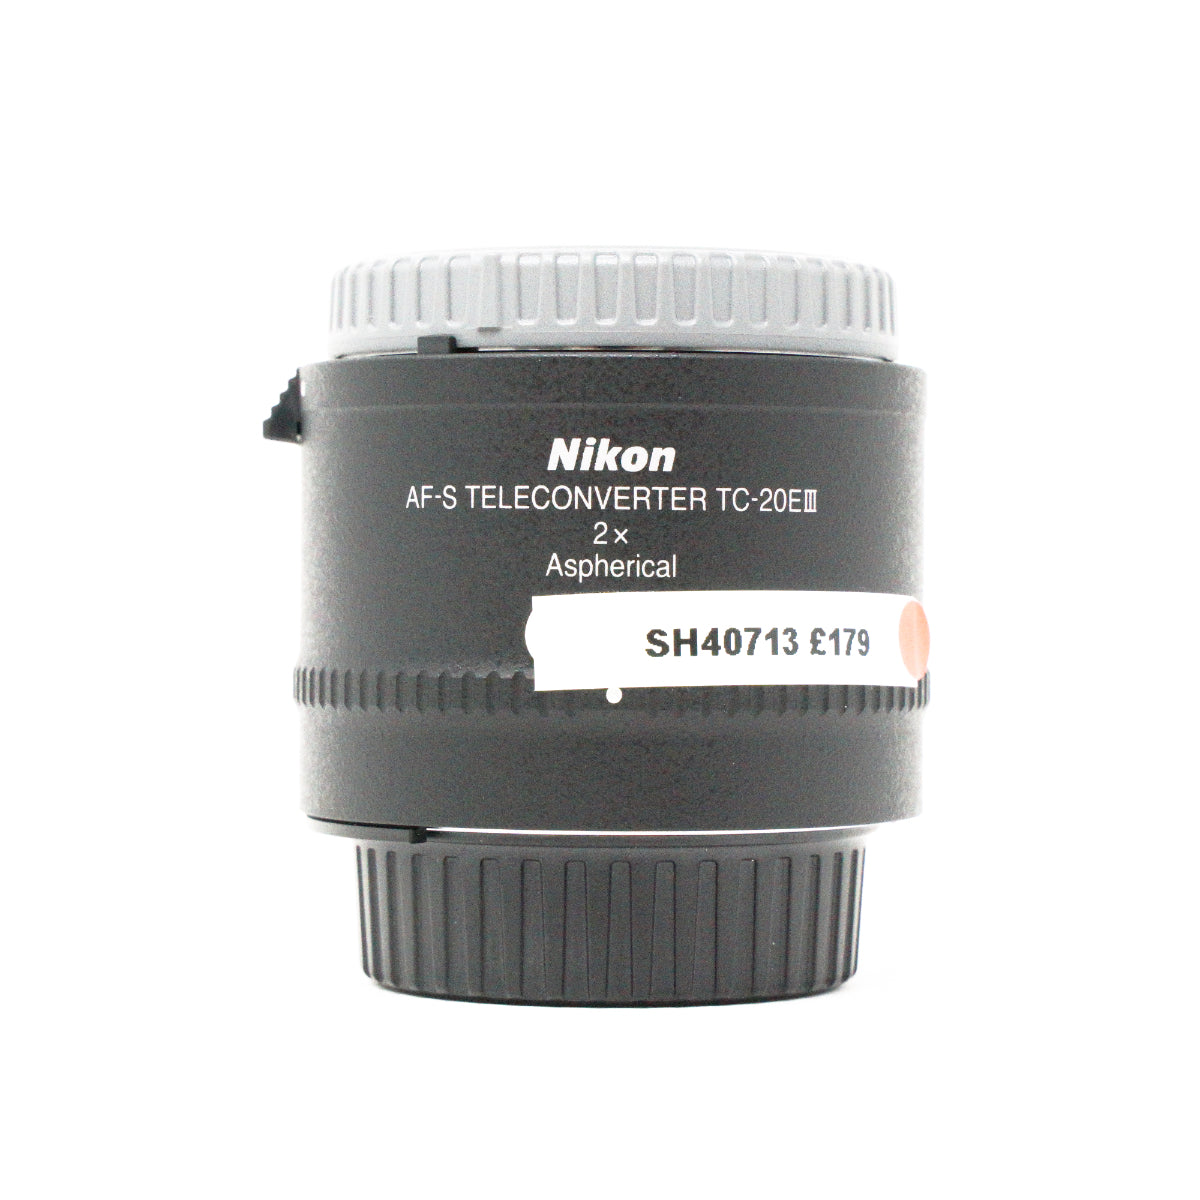 Used Nikon AF-S Nikkor 2x Teleconverter TC-20EIII